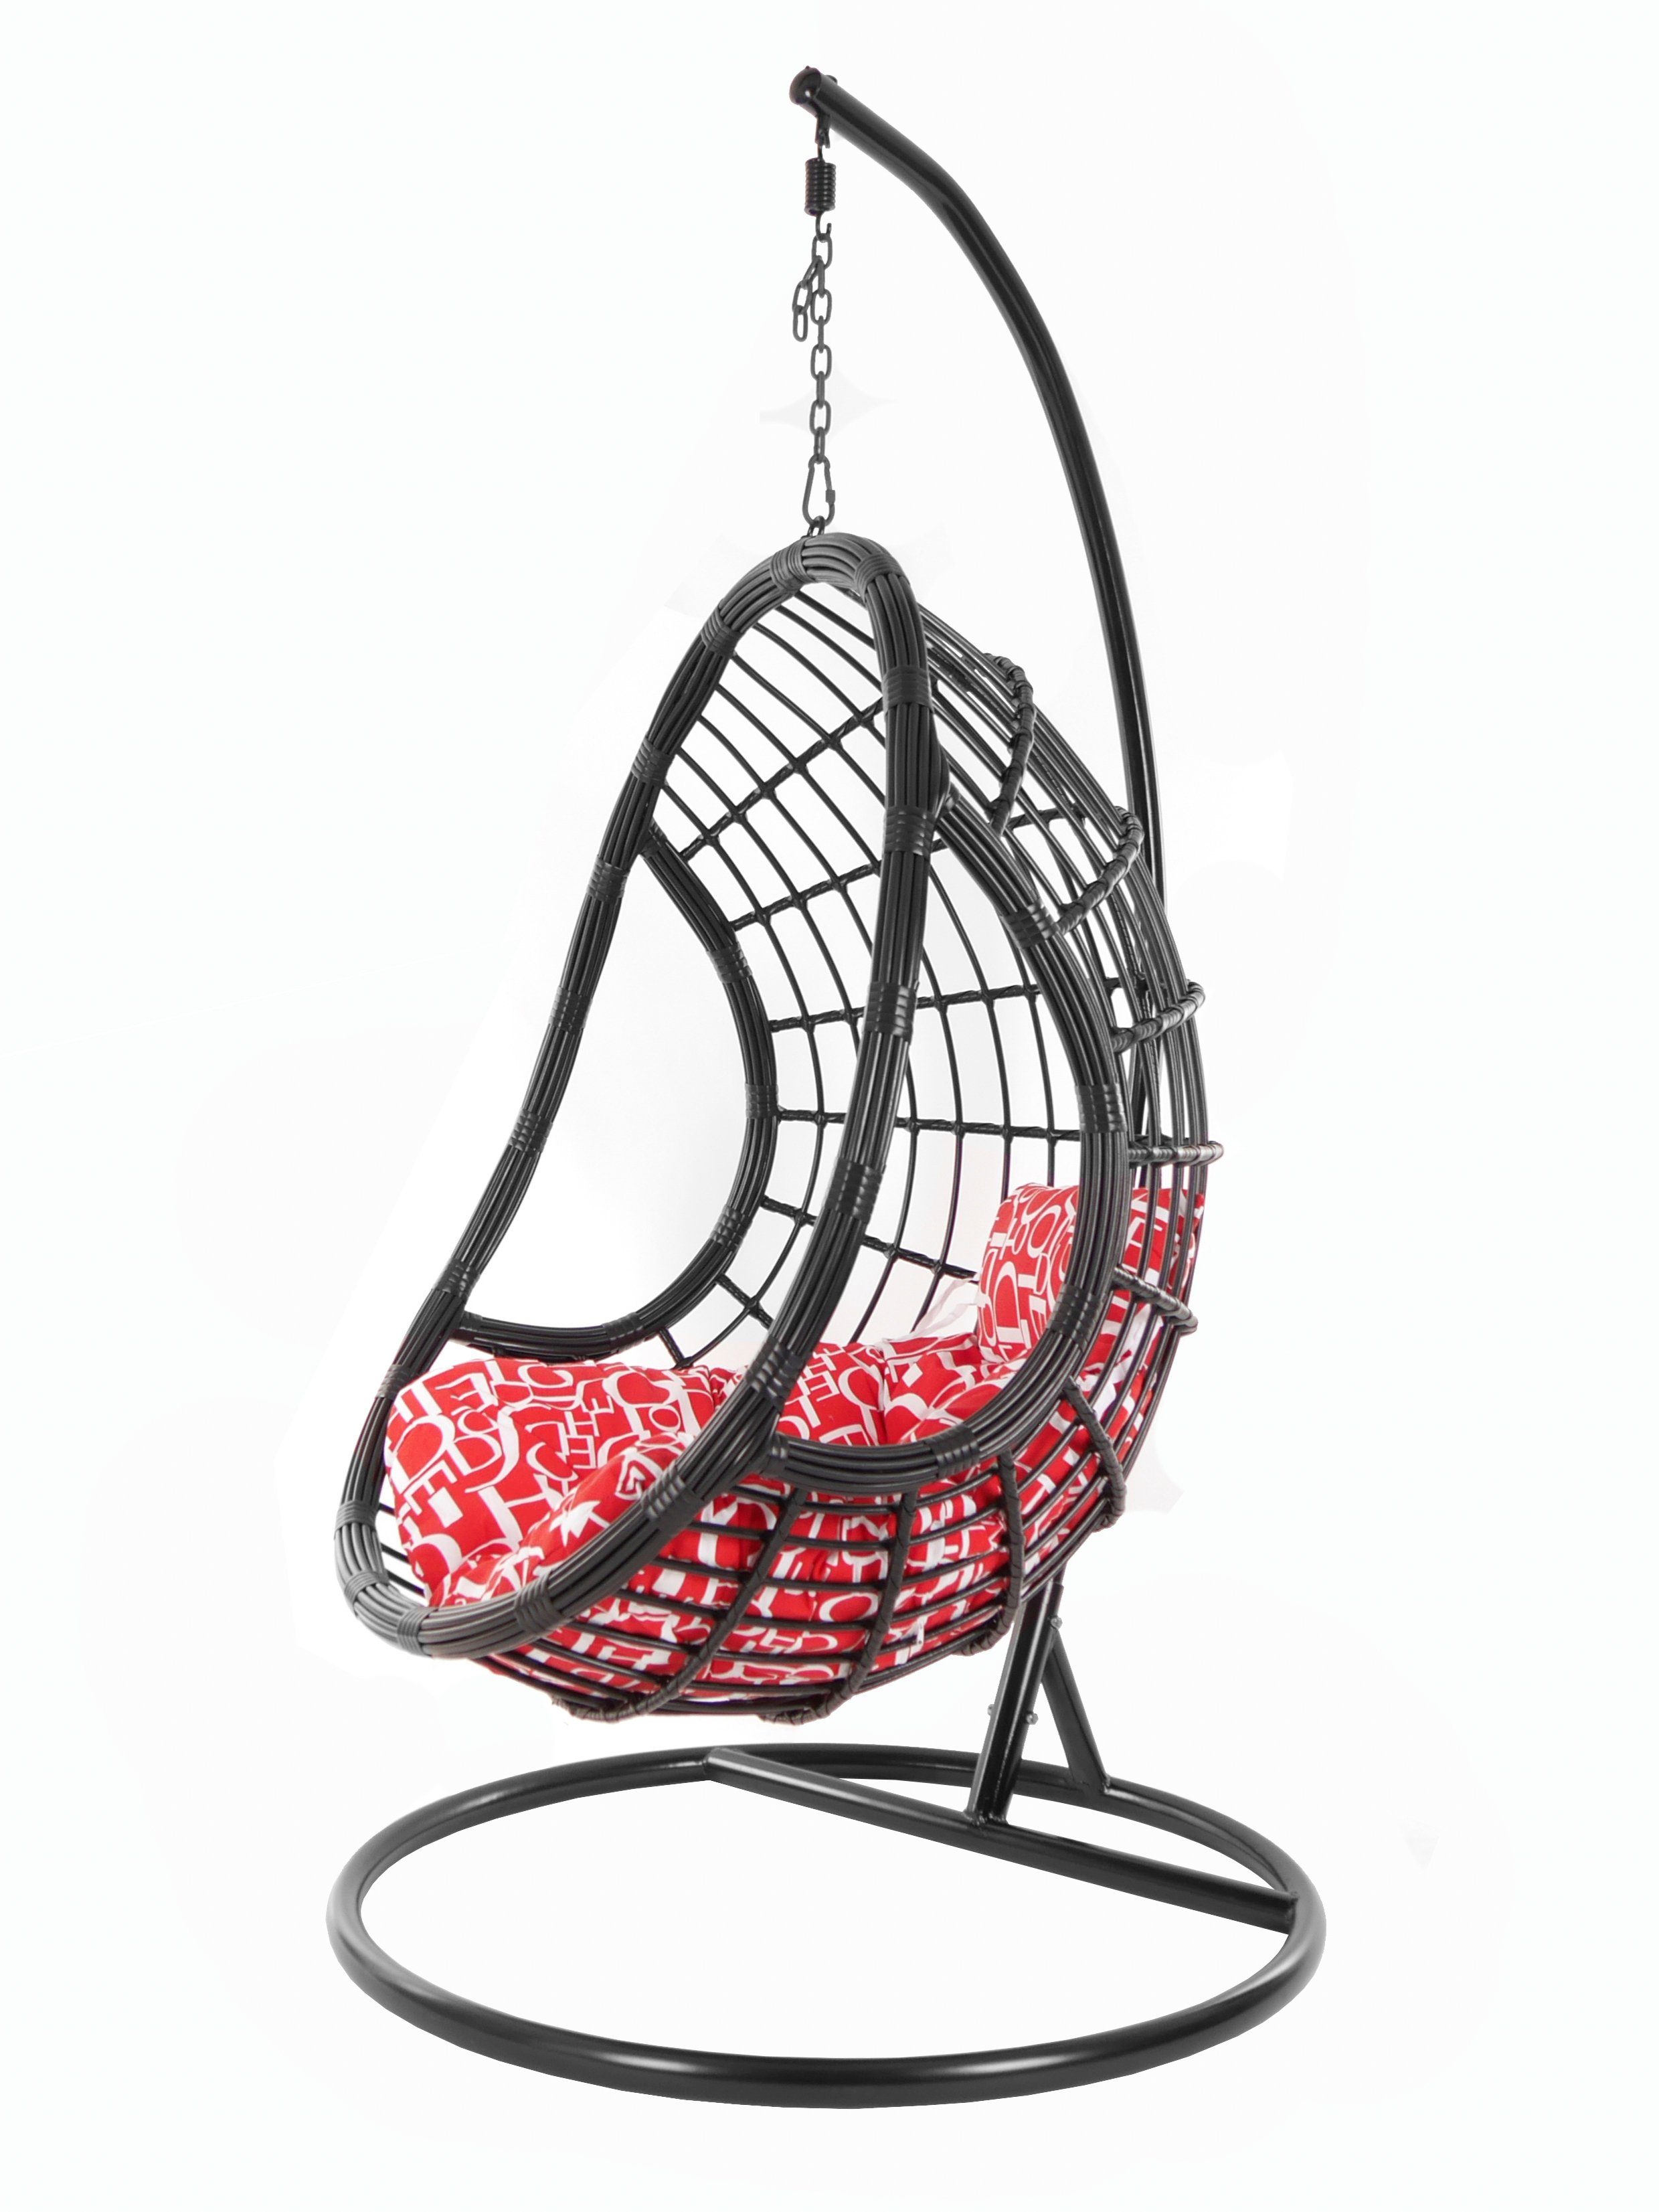 KIDEO Hängesessel PALMANOVA black, Swing Chair, schwarz, Loungemöbel, Hängesessel mit Gestell und Kissen, Schwebesessel, edles Design buchstabenmuster (3100 red letter)